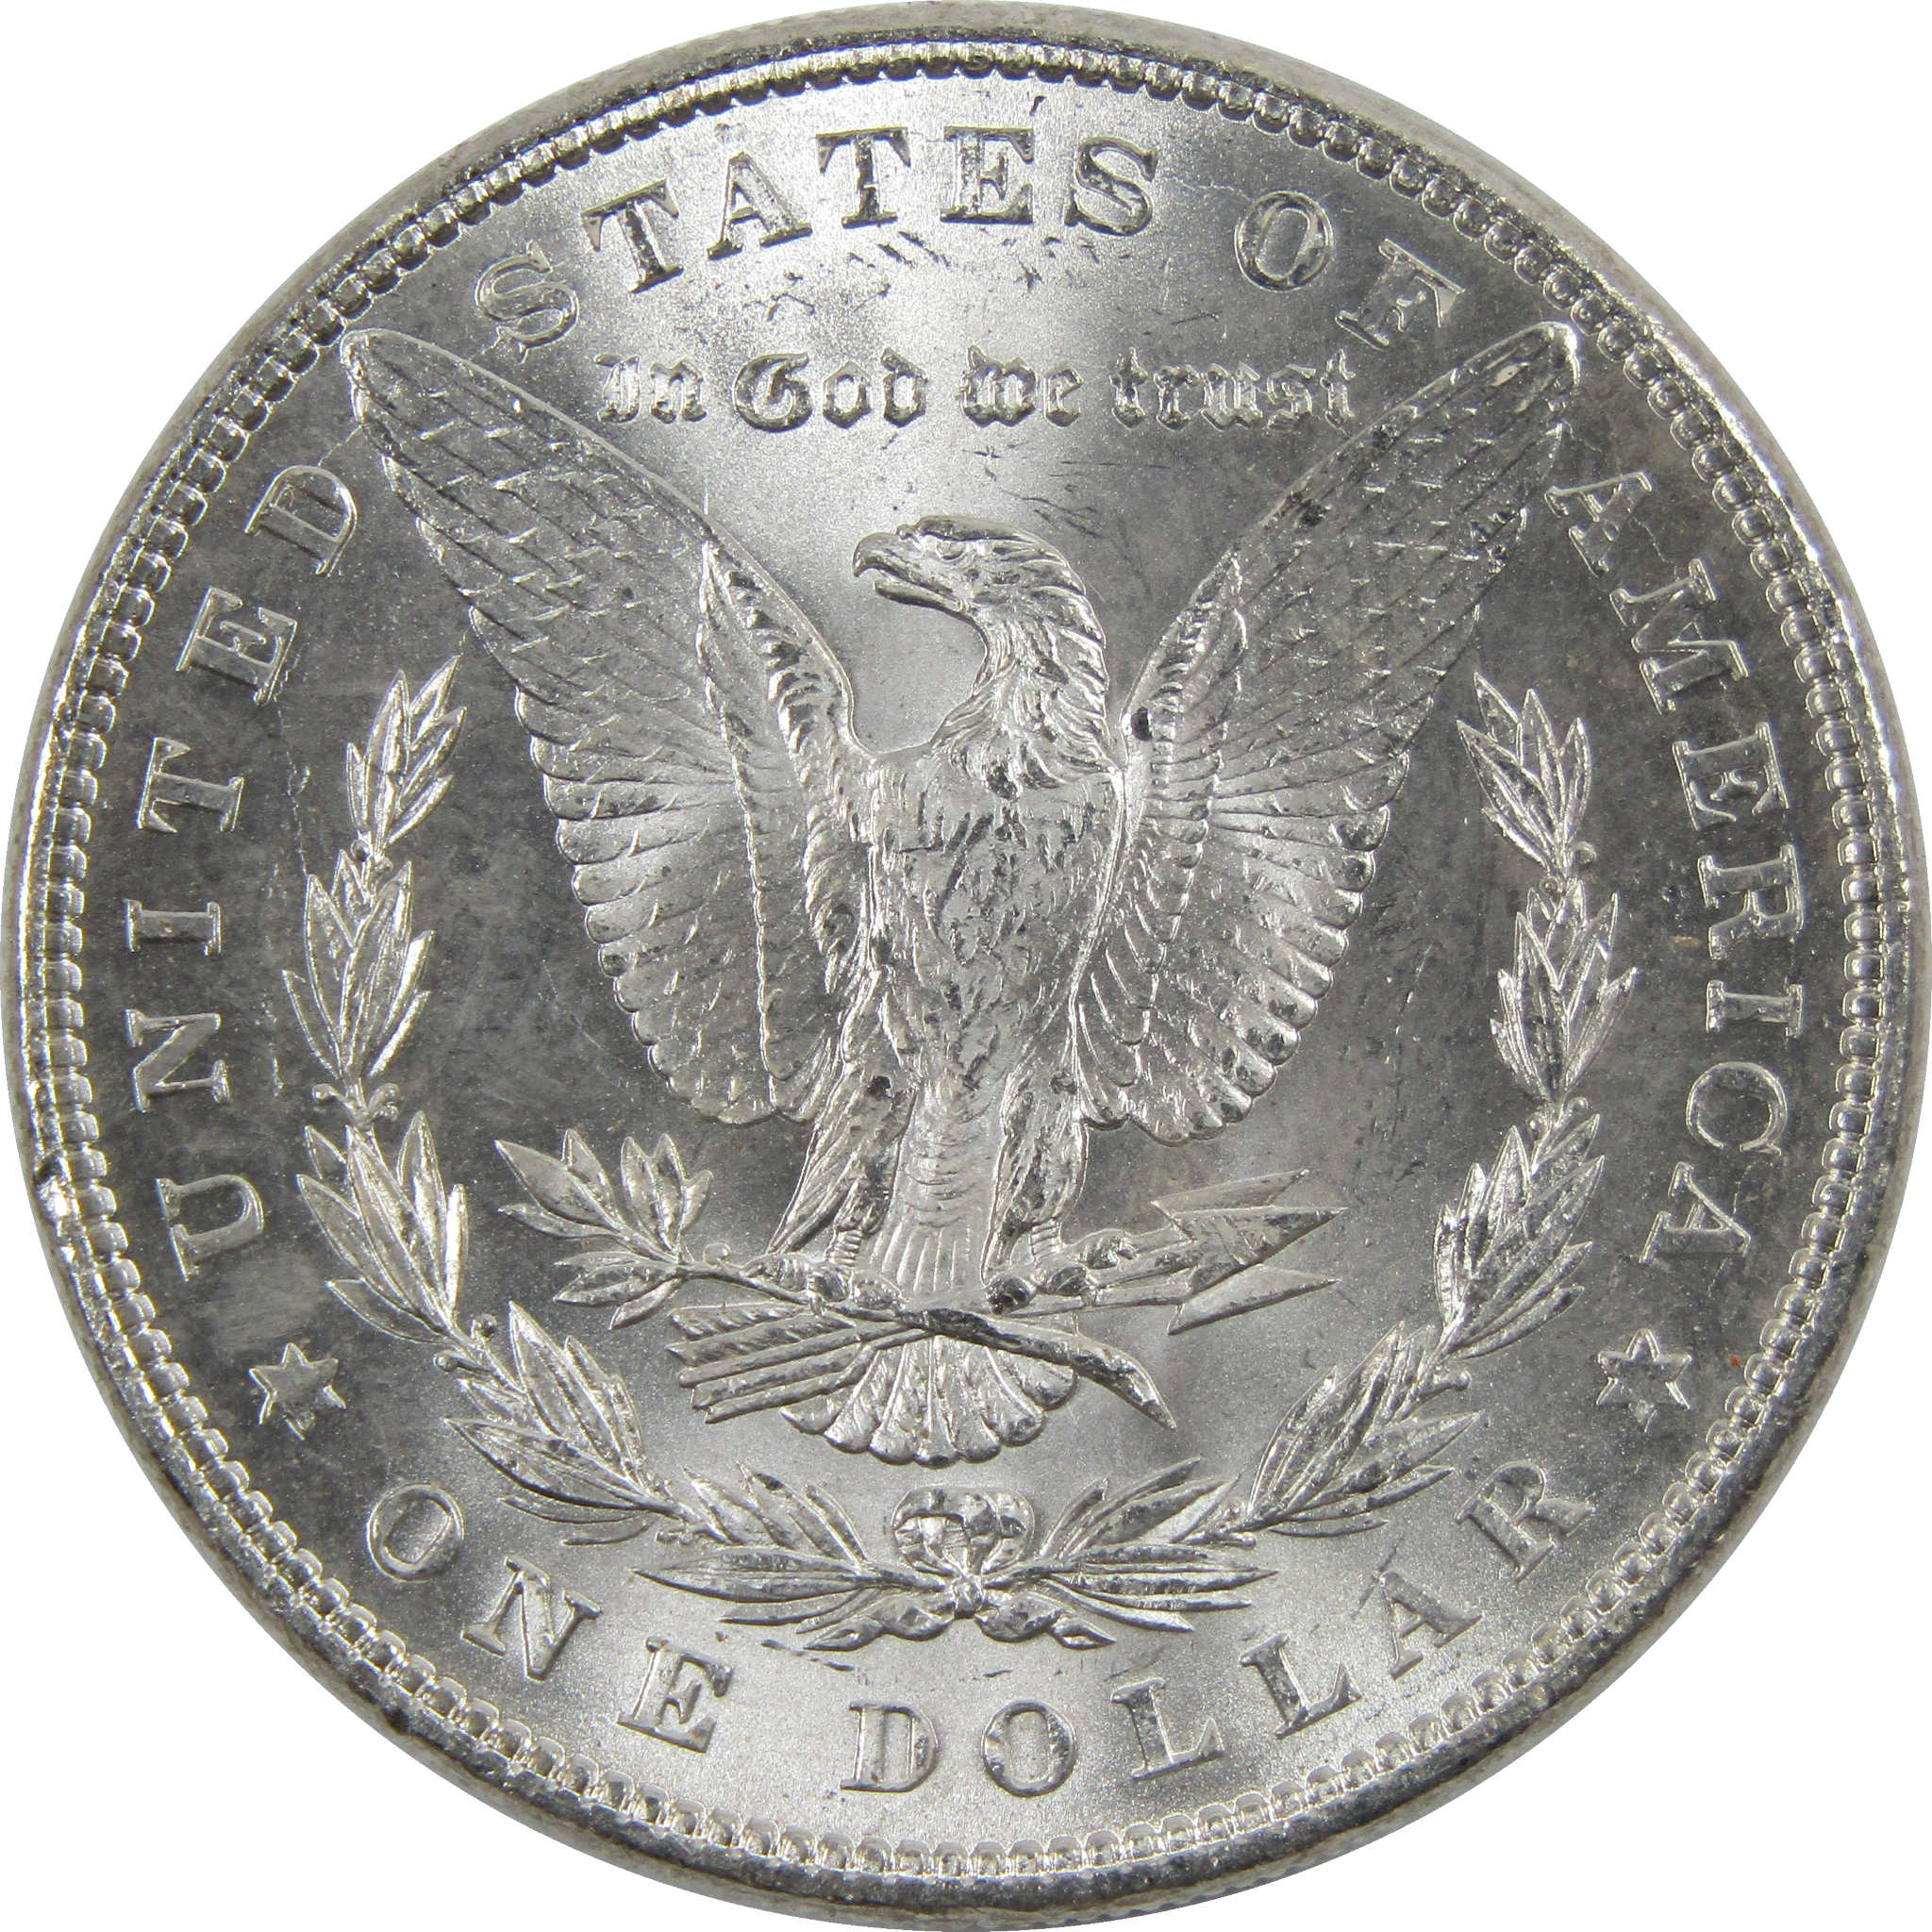 1884 Morgan Dollar BU Uncirculated 90% Silver $1 Coin SKU:I6012 - Morgan coin - Morgan silver dollar - Morgan silver dollar for sale - Profile Coins &amp; Collectibles